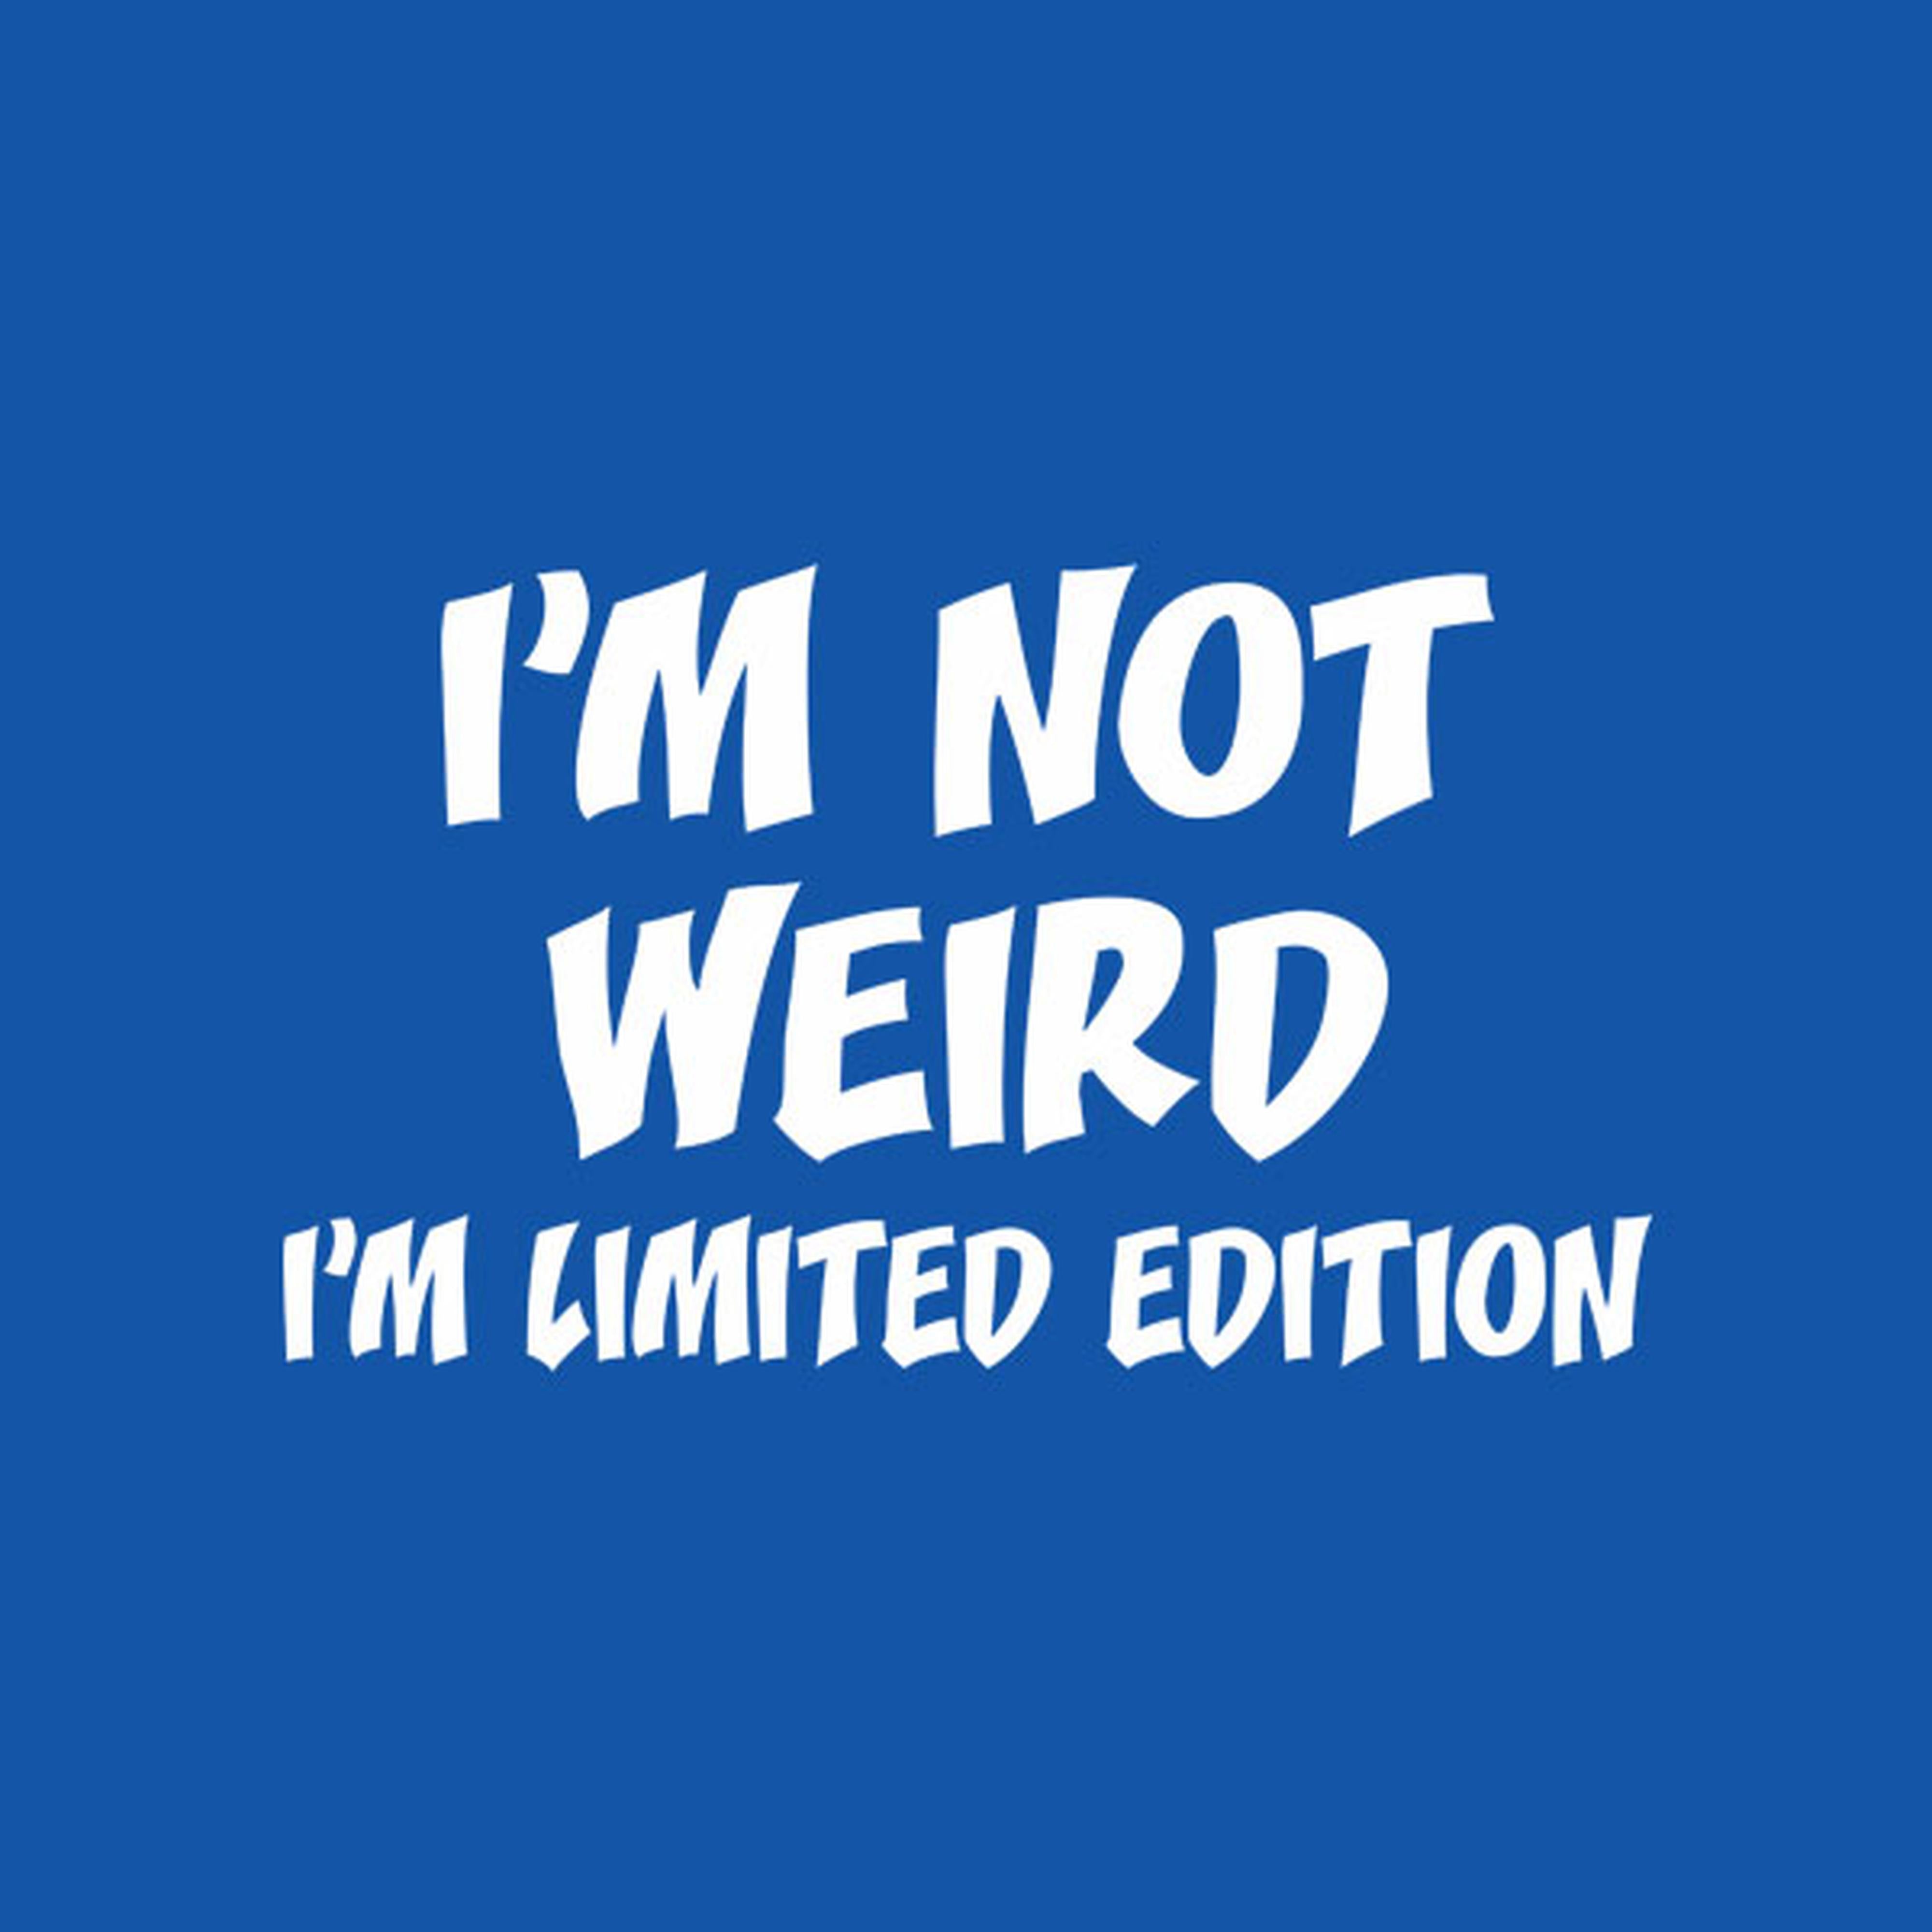 I am not weird. I'm limited edition. - T-shirt